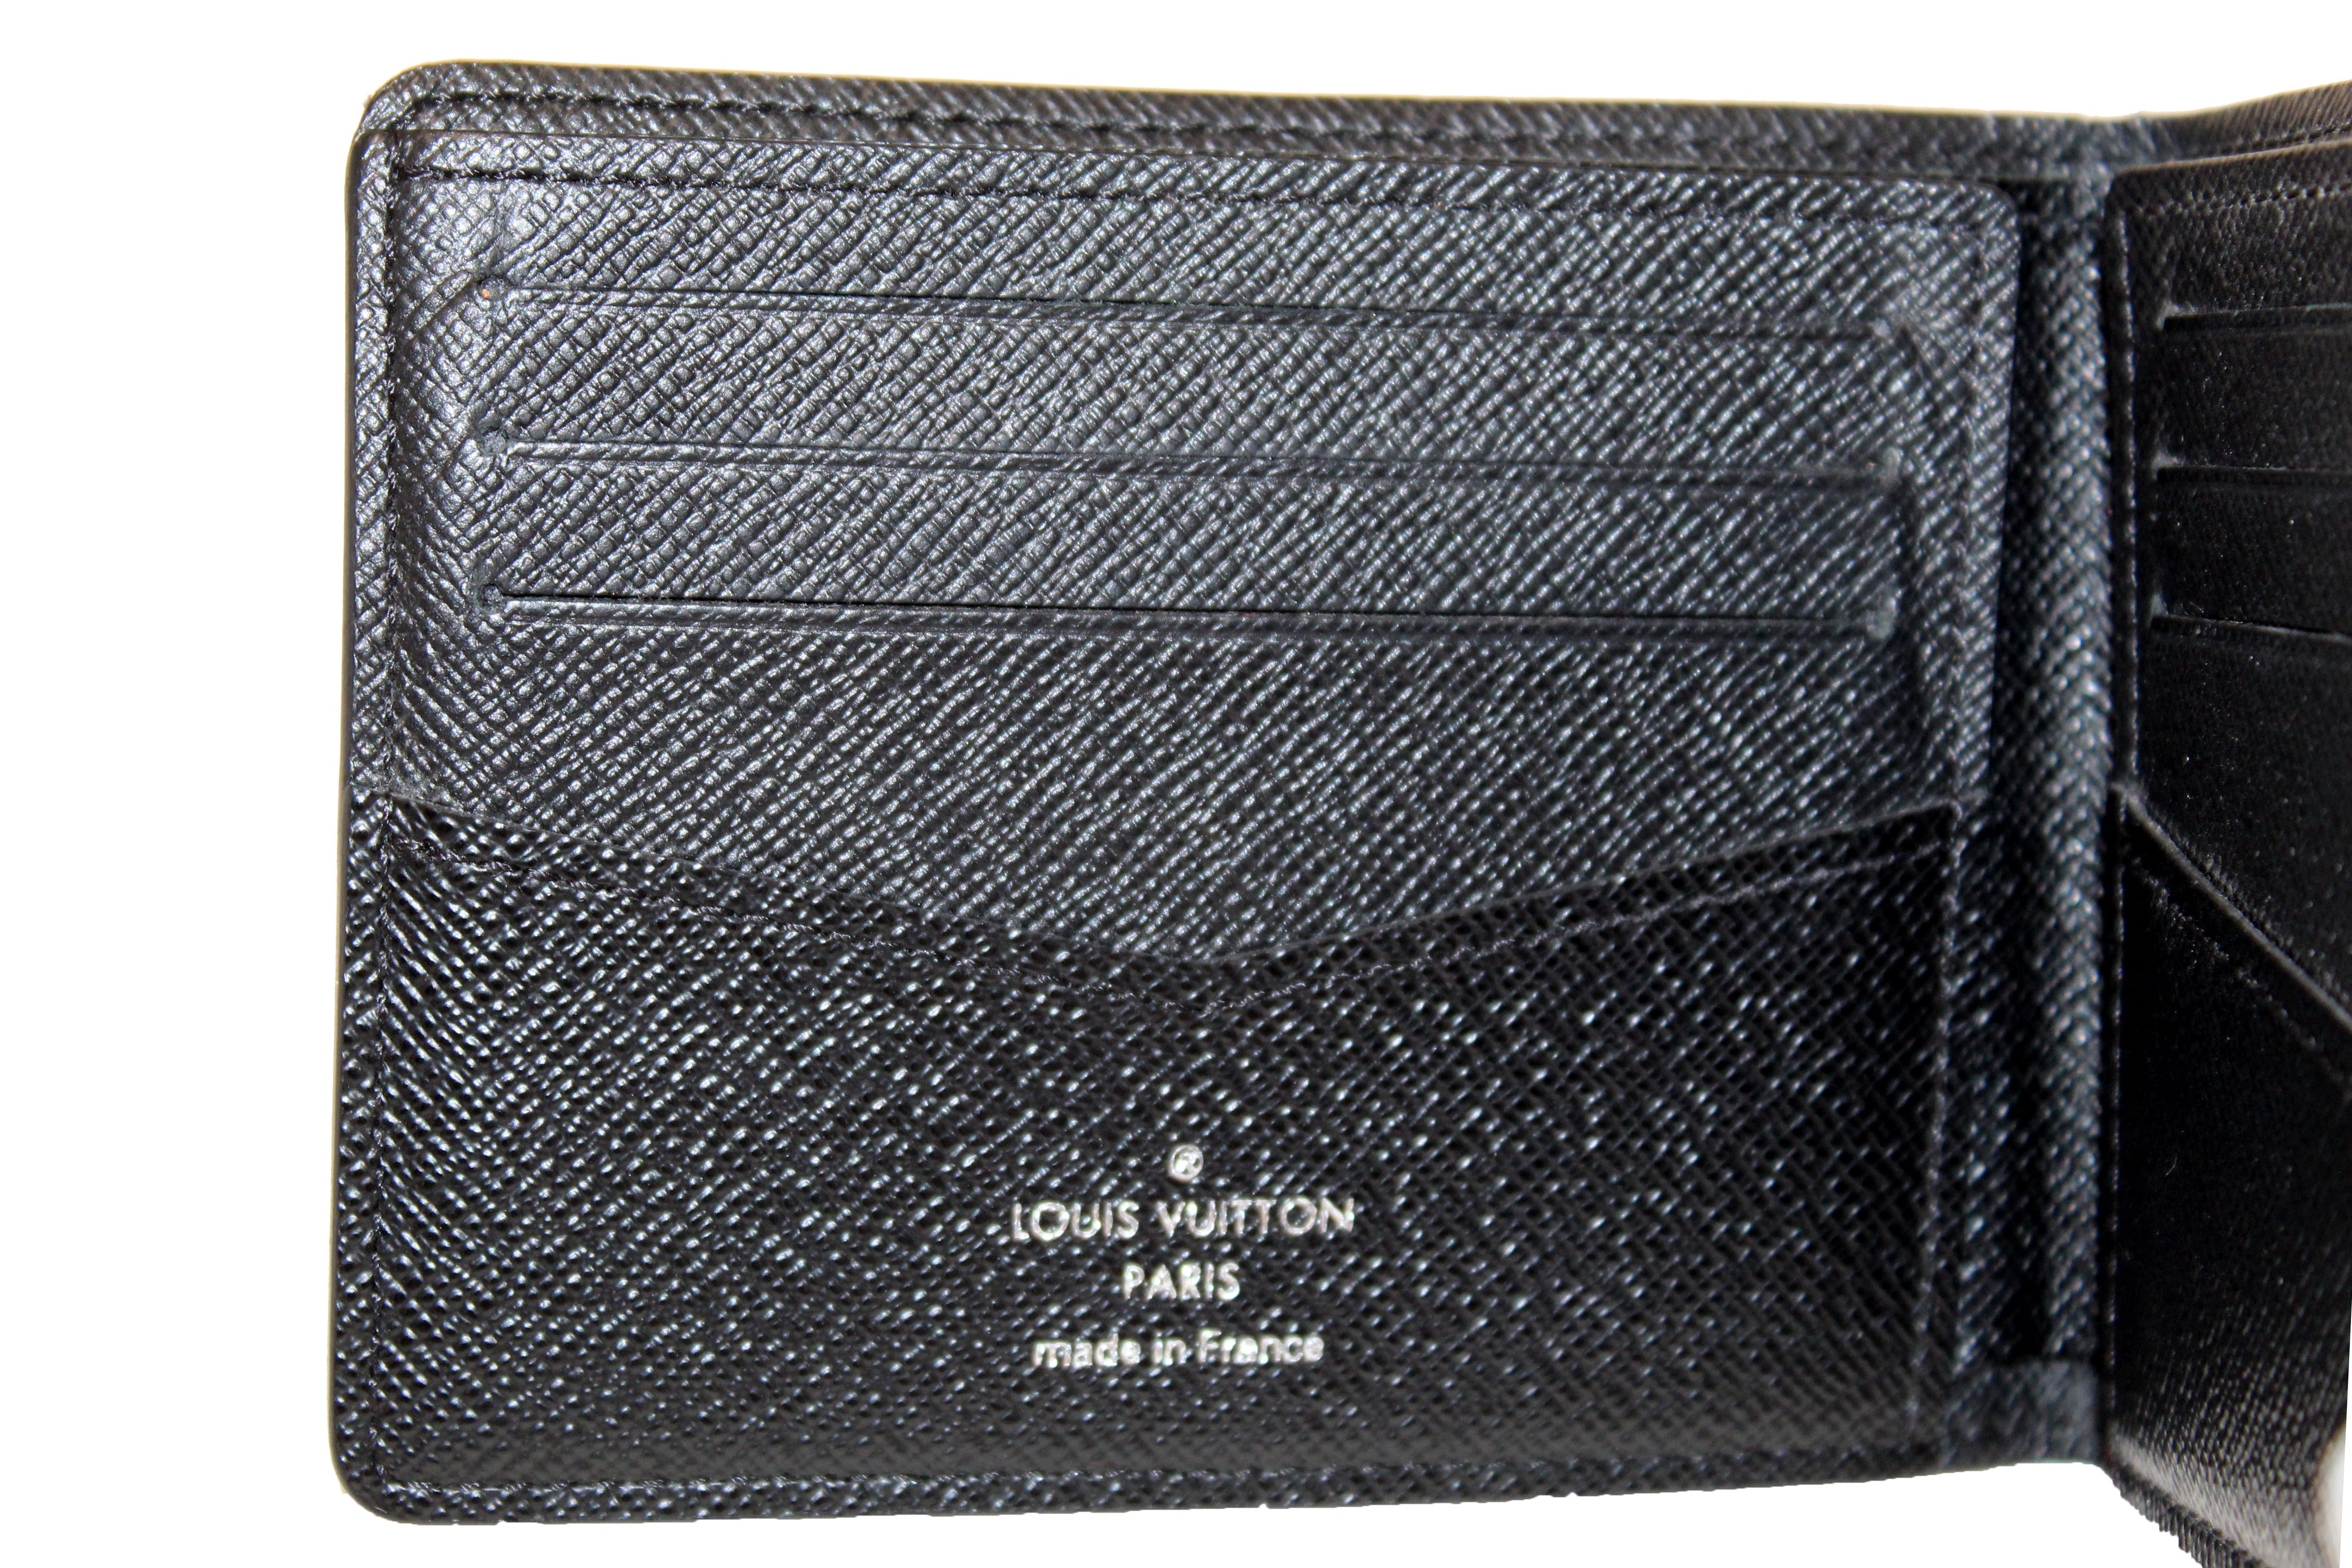 Authentic Louis Vuitton Damier Graphite Canvas Slender Men's Wallet